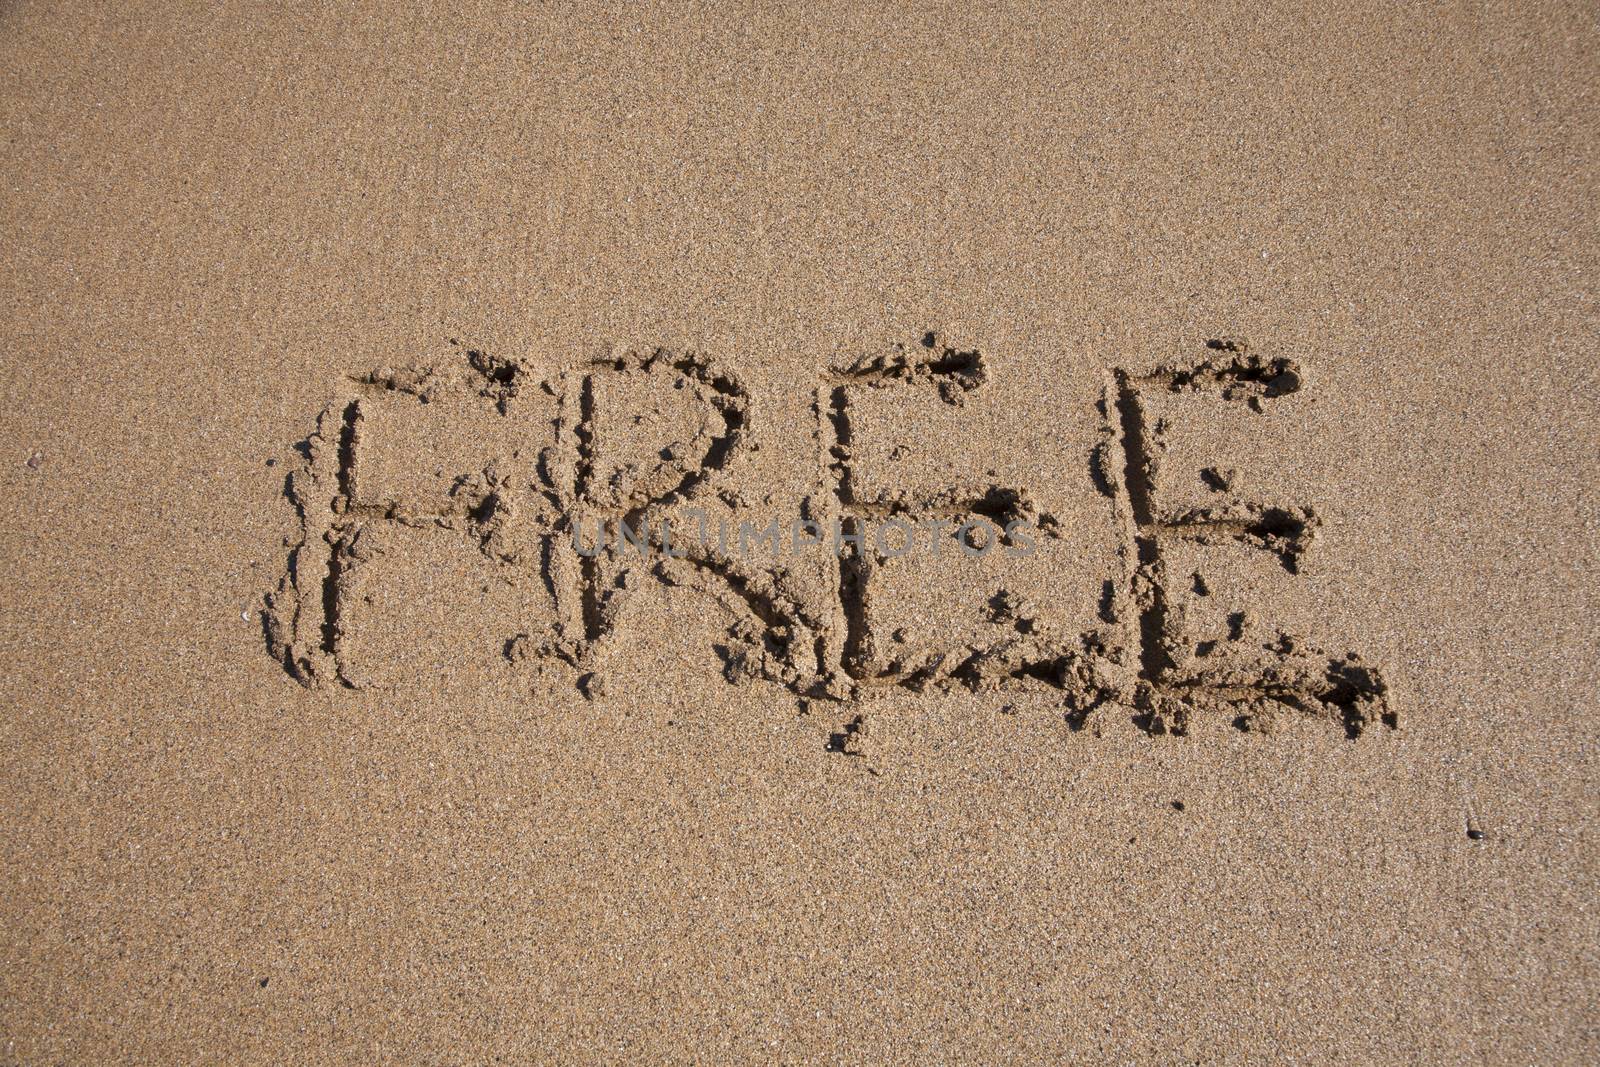 free word written on brown sand ground low tide beach ocean seashore in Spain Europe